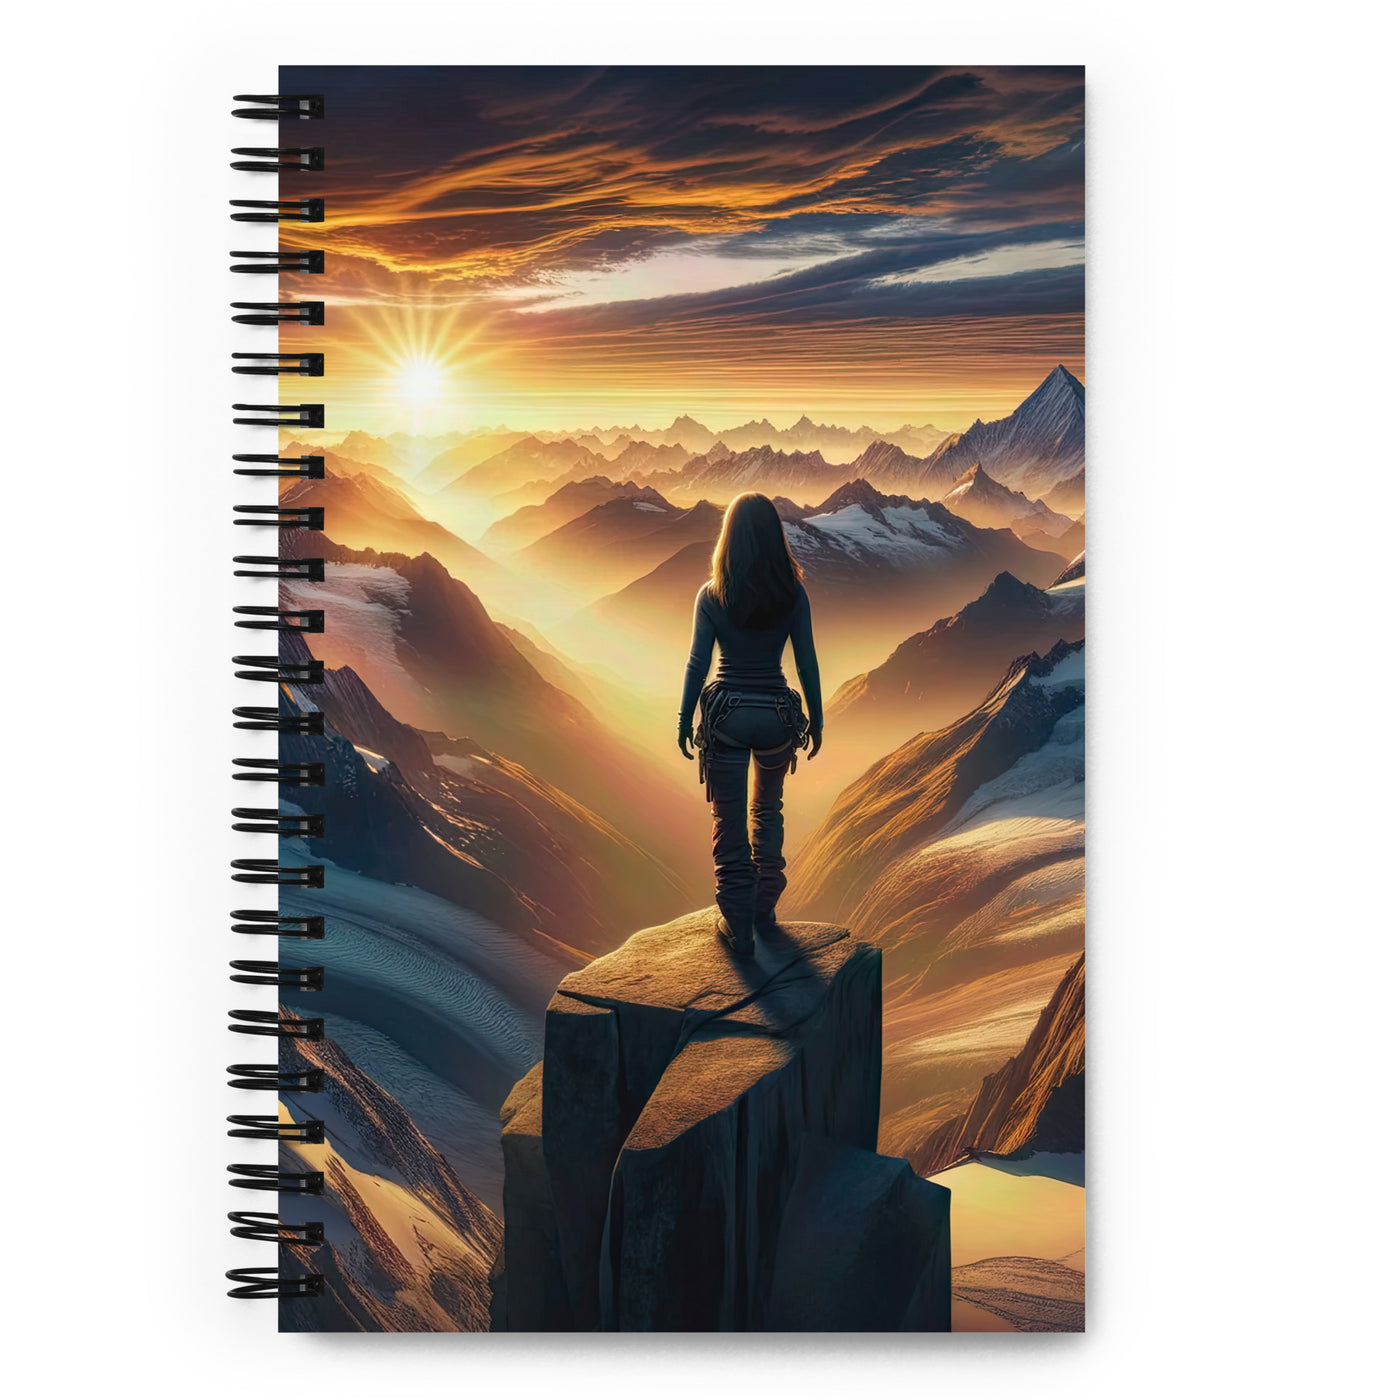 Fotorealistische Darstellung der Alpen bei Sonnenaufgang, Wanderin unter einem gold-purpurnen Himmel - Notizbuch wandern xxx yyy zzz Default Title